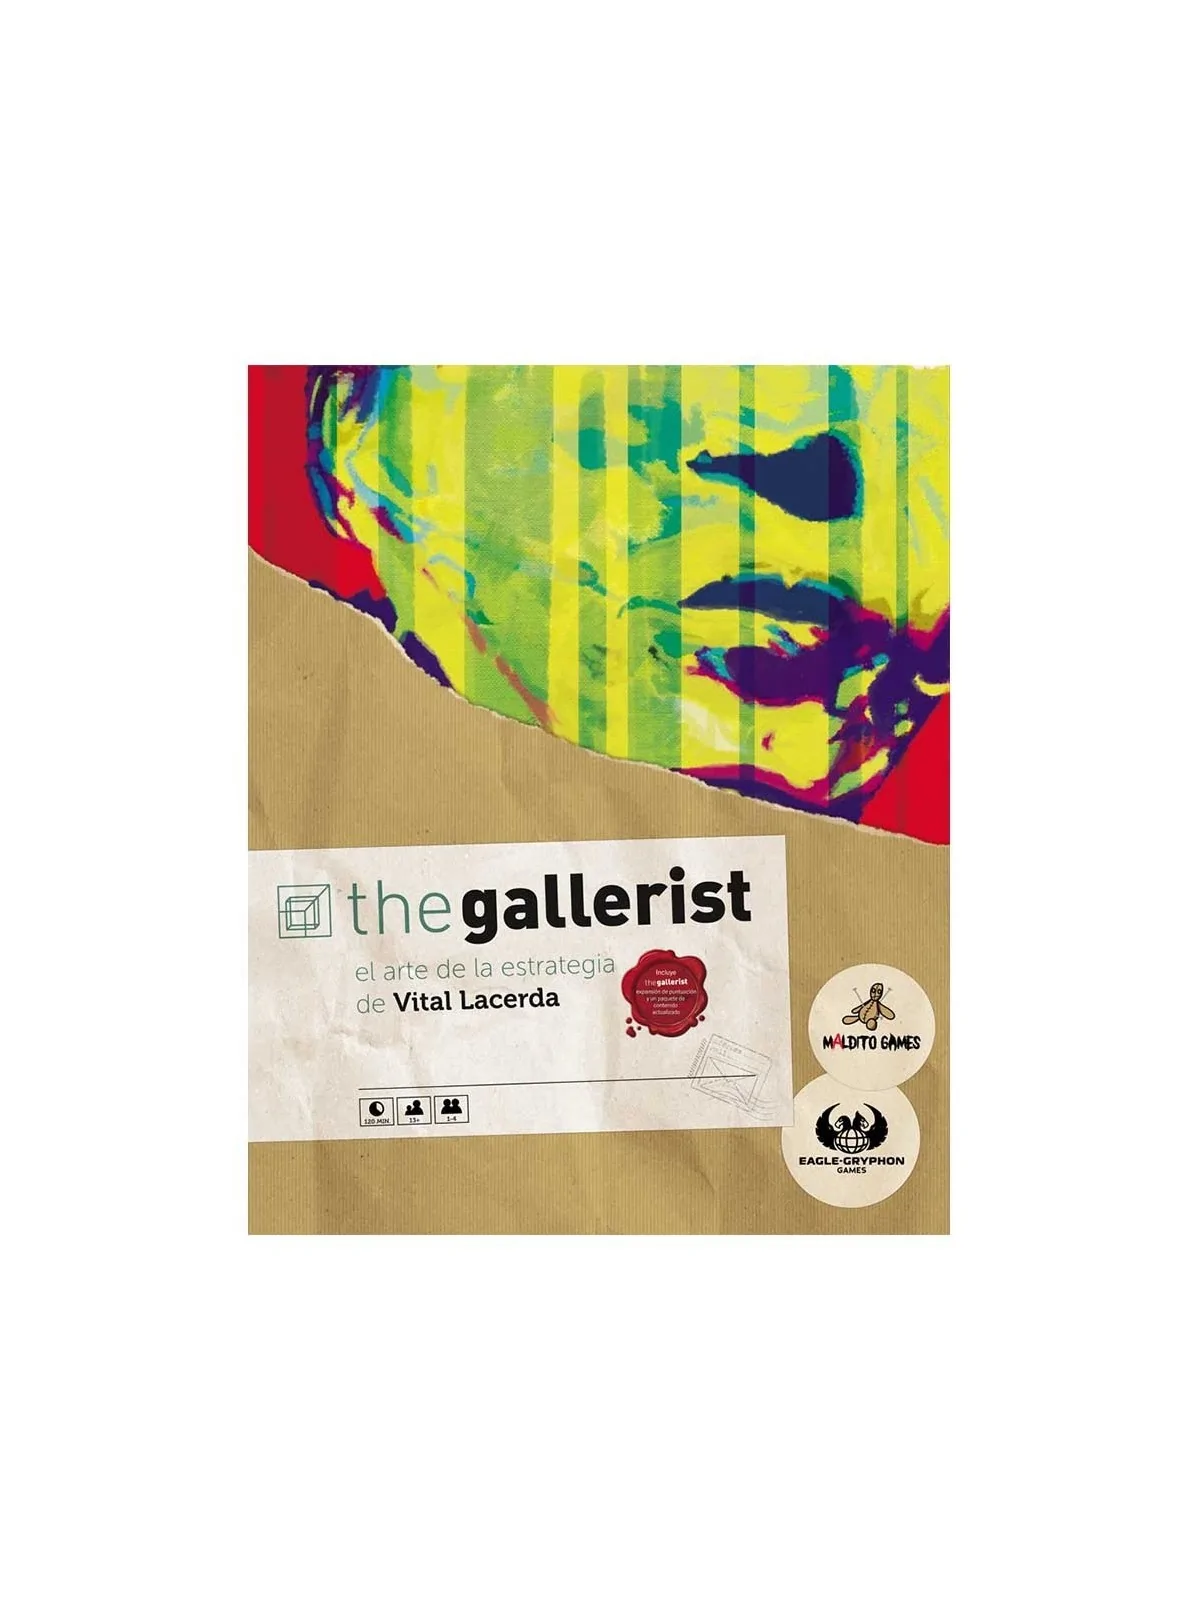 Comprar The Gallerist barato al mejor precio 117,00 € de Maldito Games